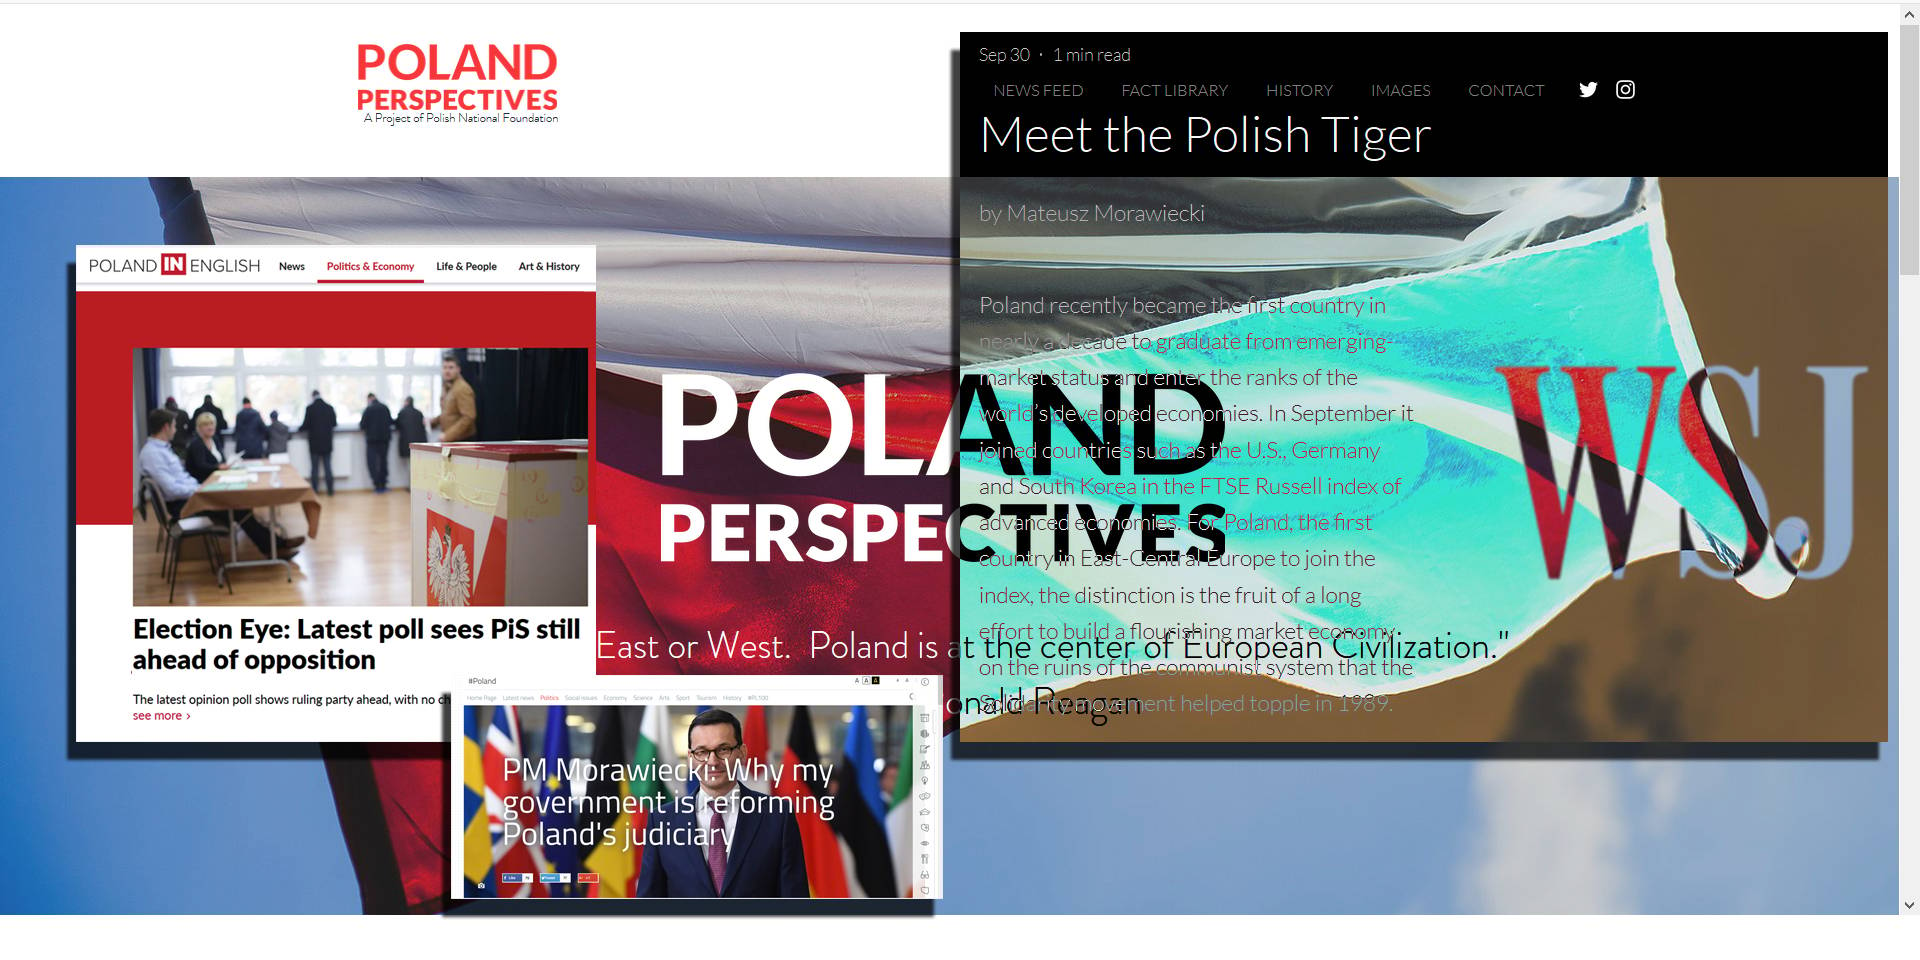 Grafika do artykułu Welcome to propaganda. Prorządowe portale promują za granicą wypaczony obraz Polski